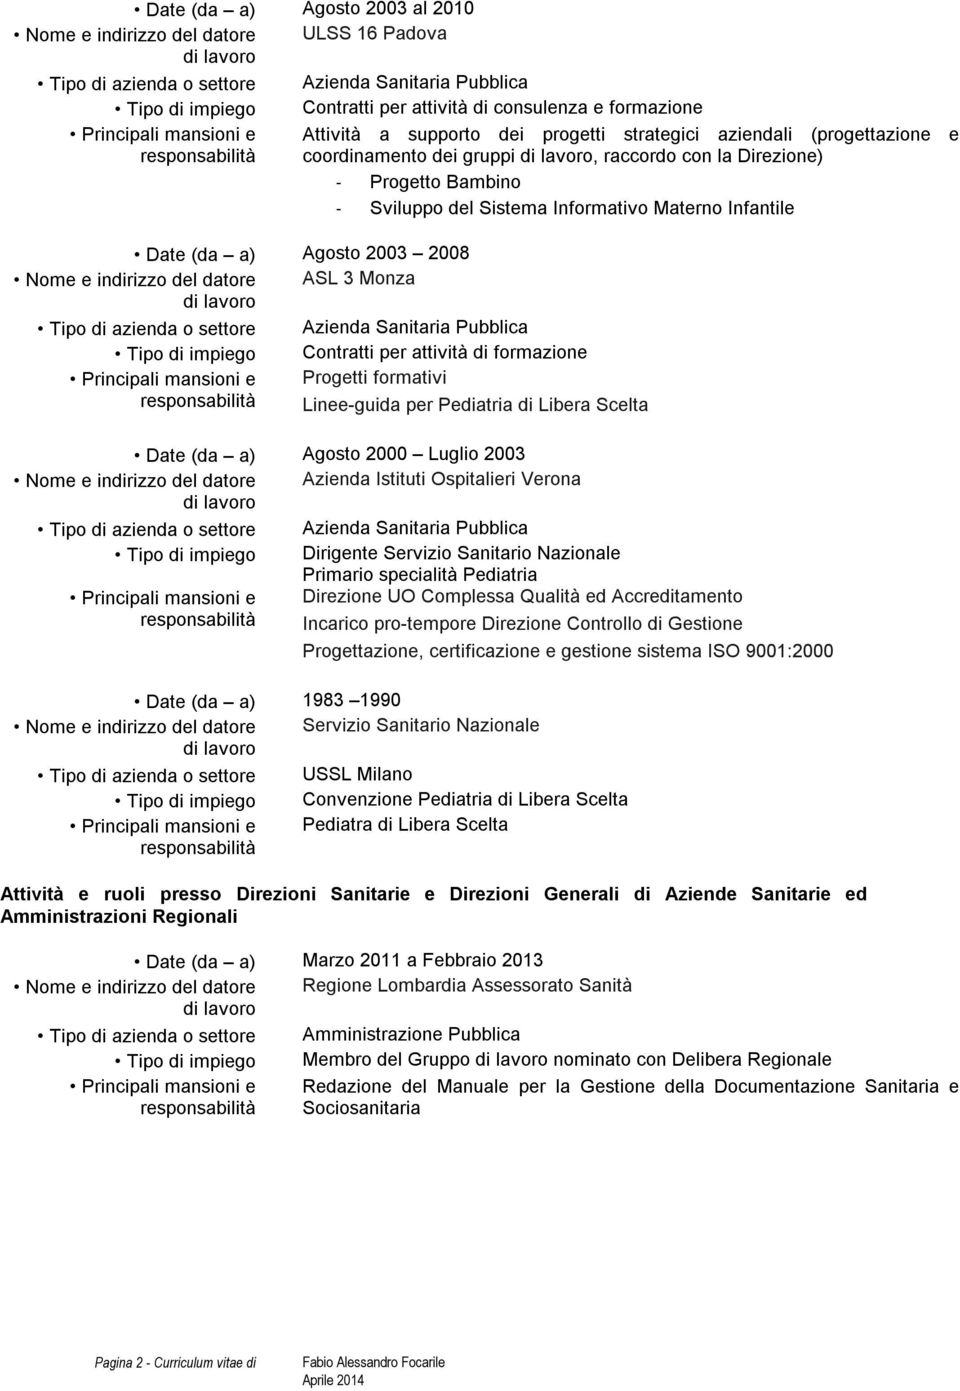 Contratti per attività di formazione Progetti formativi Linee-guida per Pediatria di Libera Scelta Date (da a) Agosto 2000 Luglio 2003 Nome e indirizzo del datore Azienda Istituti Ospitalieri Verona